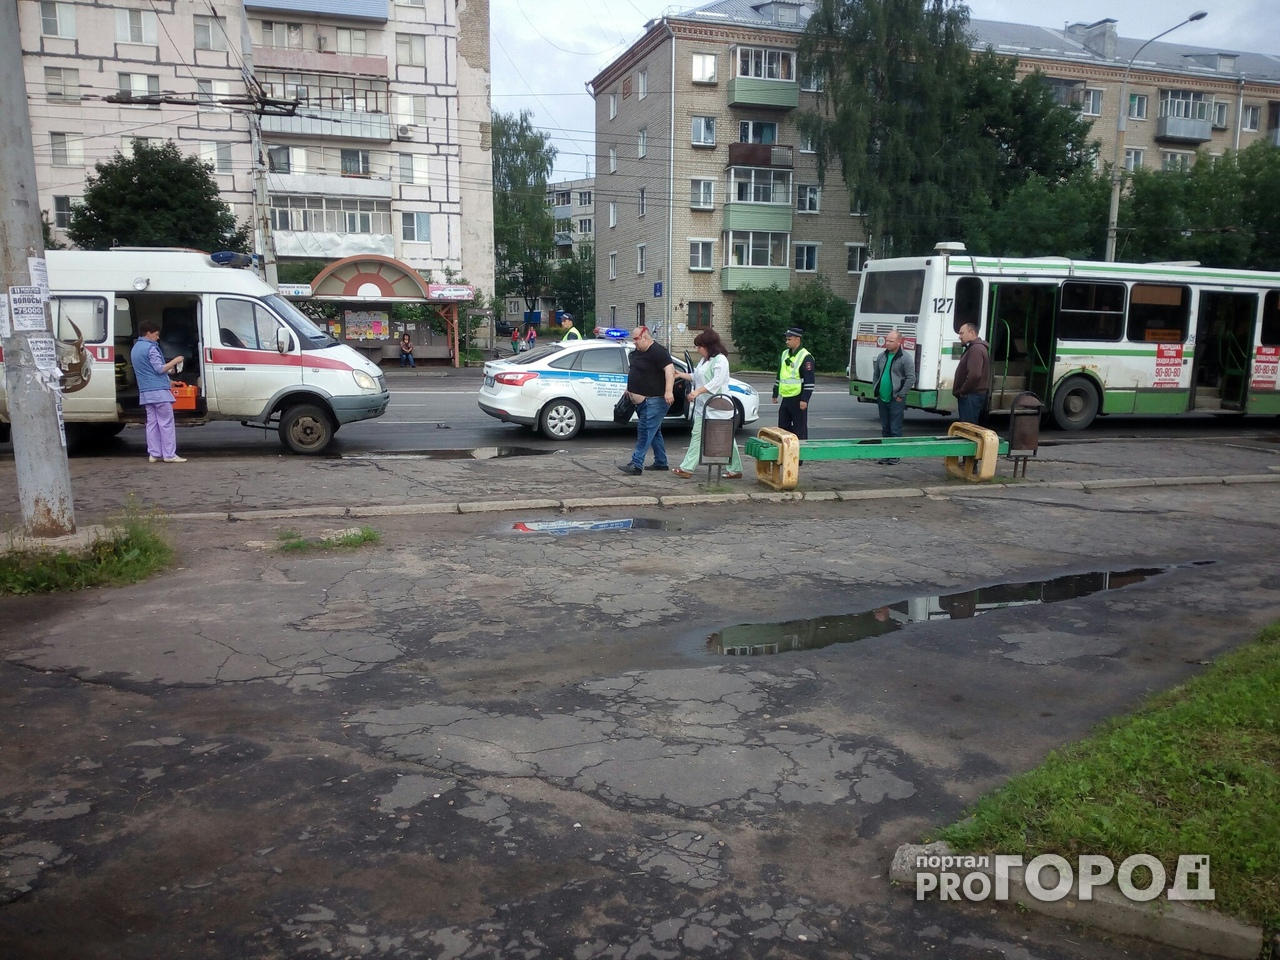 Под Ярославлем мужчина выпал из автобуса и пробил себе голову: кадры